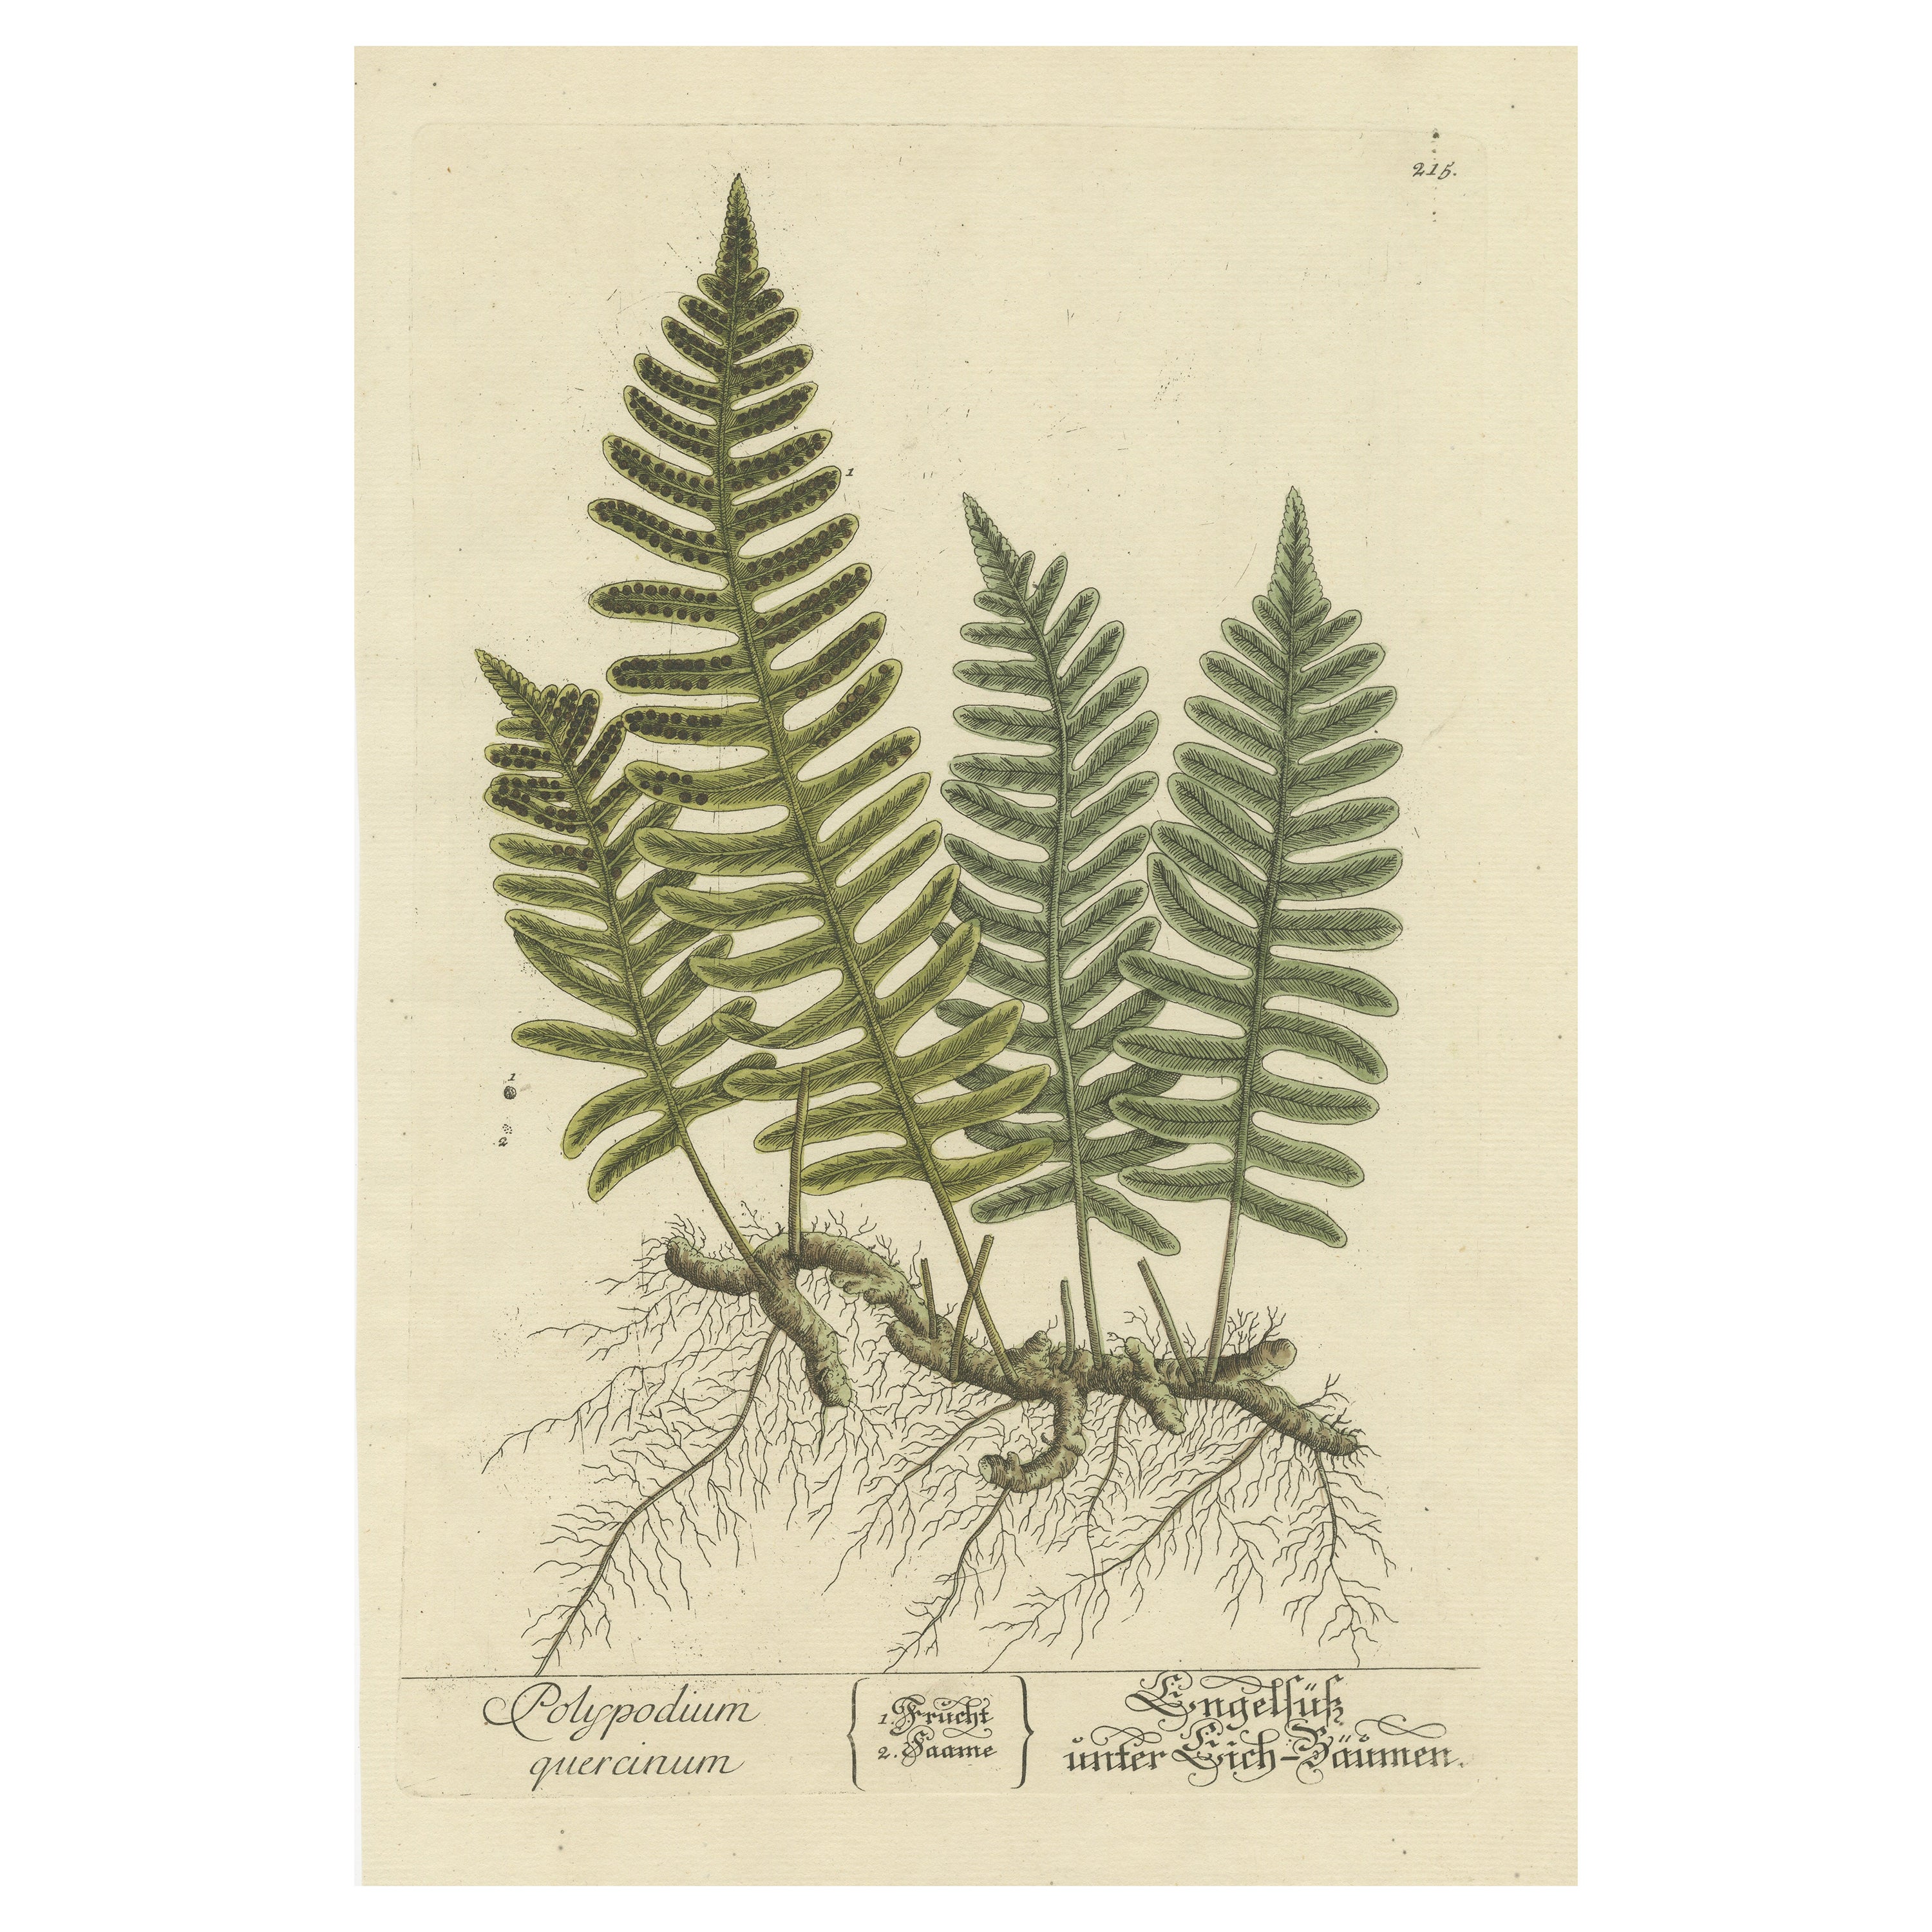 Antique Botanical Print of Polypodium Quercinum